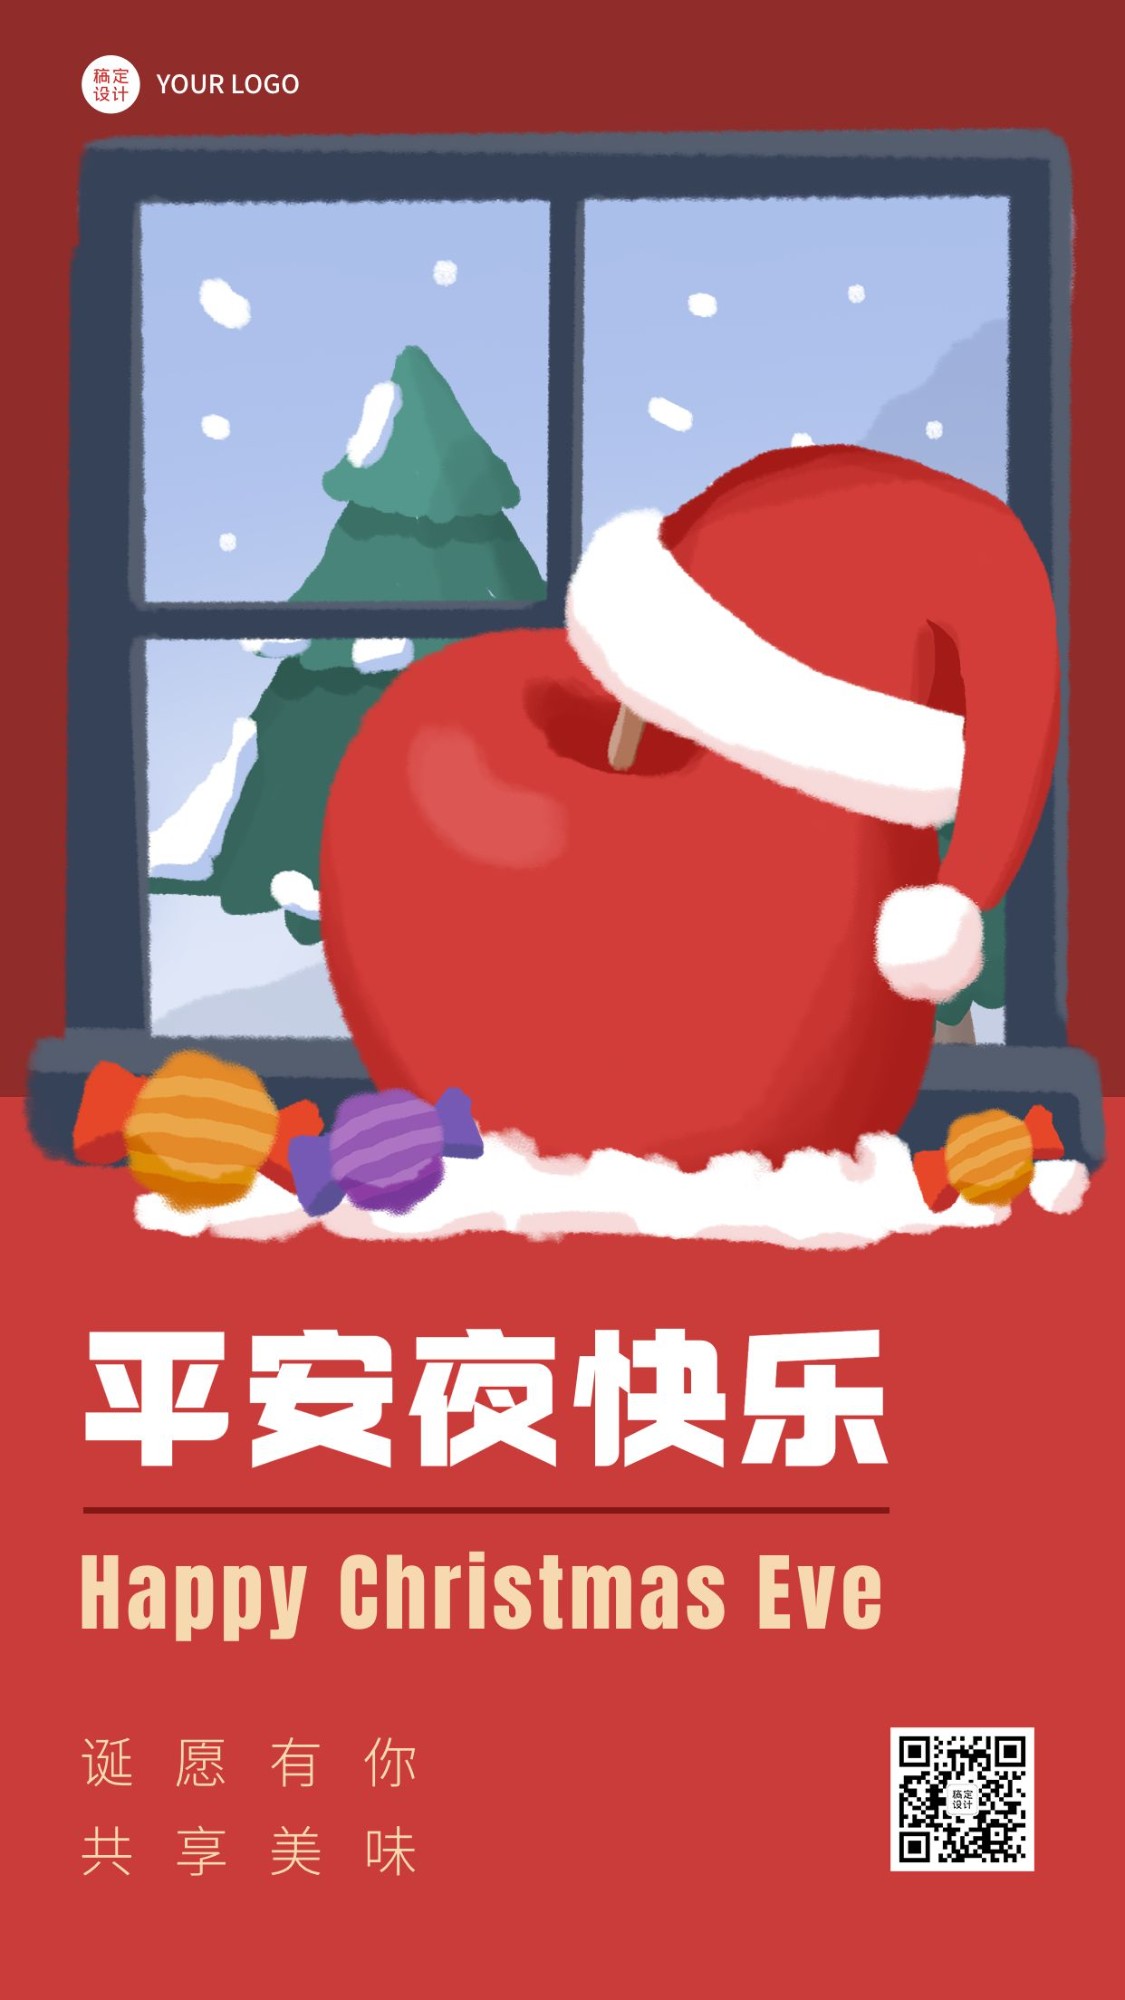 圣诞节&平安夜节日祝福手机海报预览效果